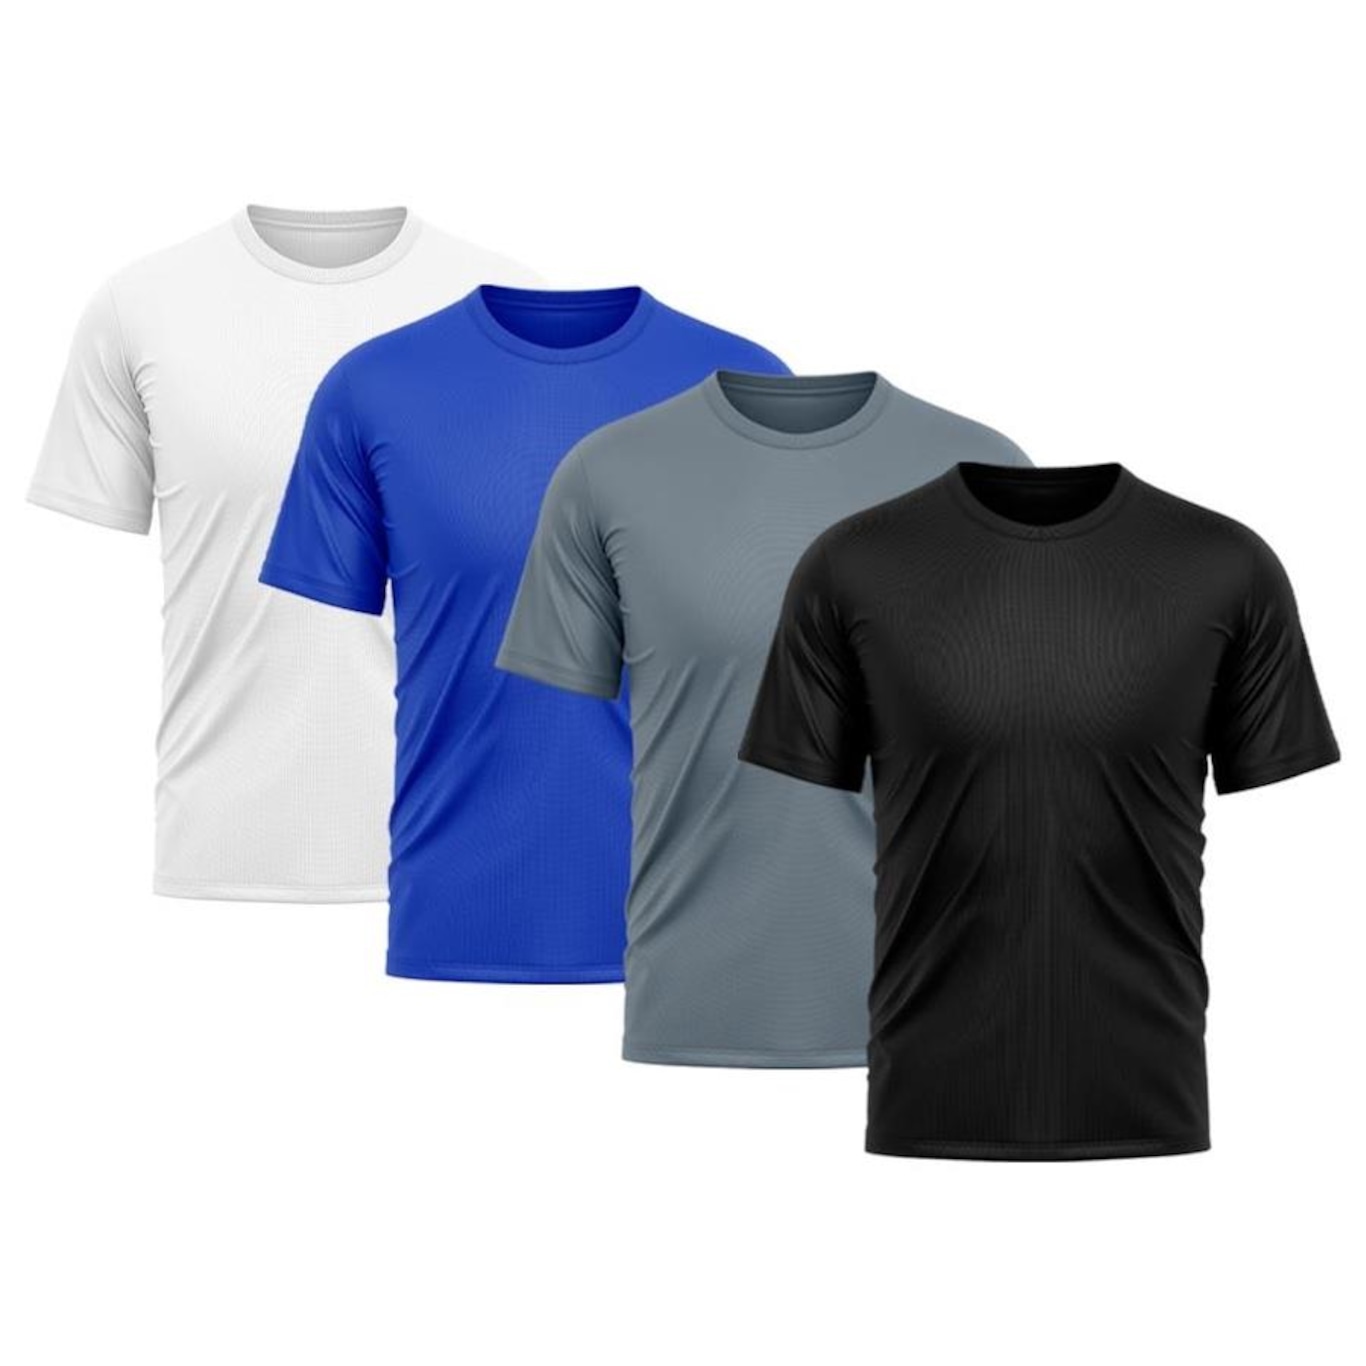 Camiseta Whats Wear Lisa Dry Fit com Proteção Solar UV - Masculina - 4 Unds  em Promoção